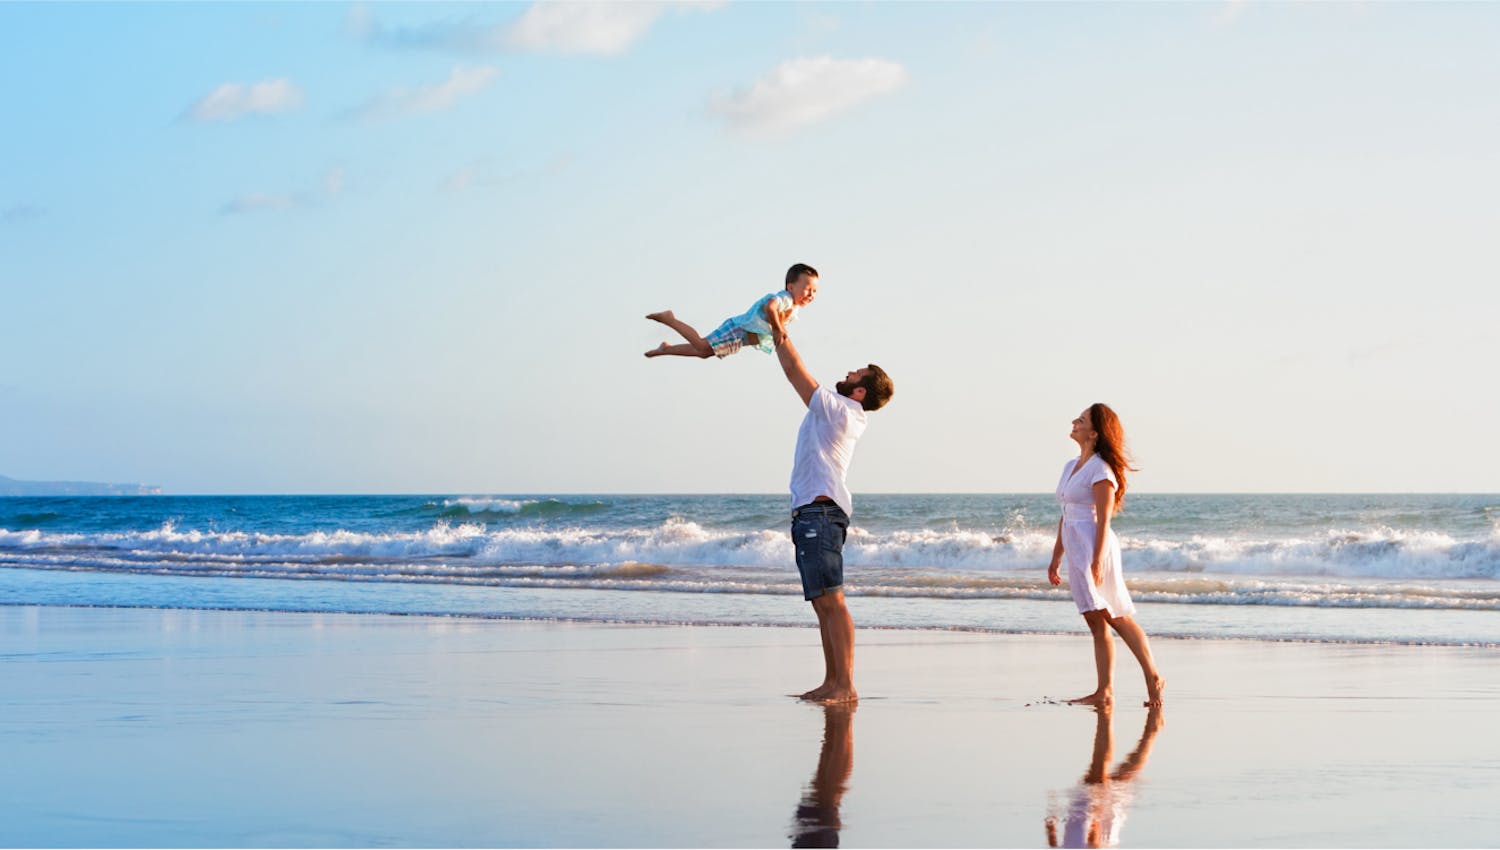 Famille heureuse sur la plage, qui a pu s’offrir des vacances grâce à des placements financiers intelligents et a pu percevoir des revenus complémentaires.